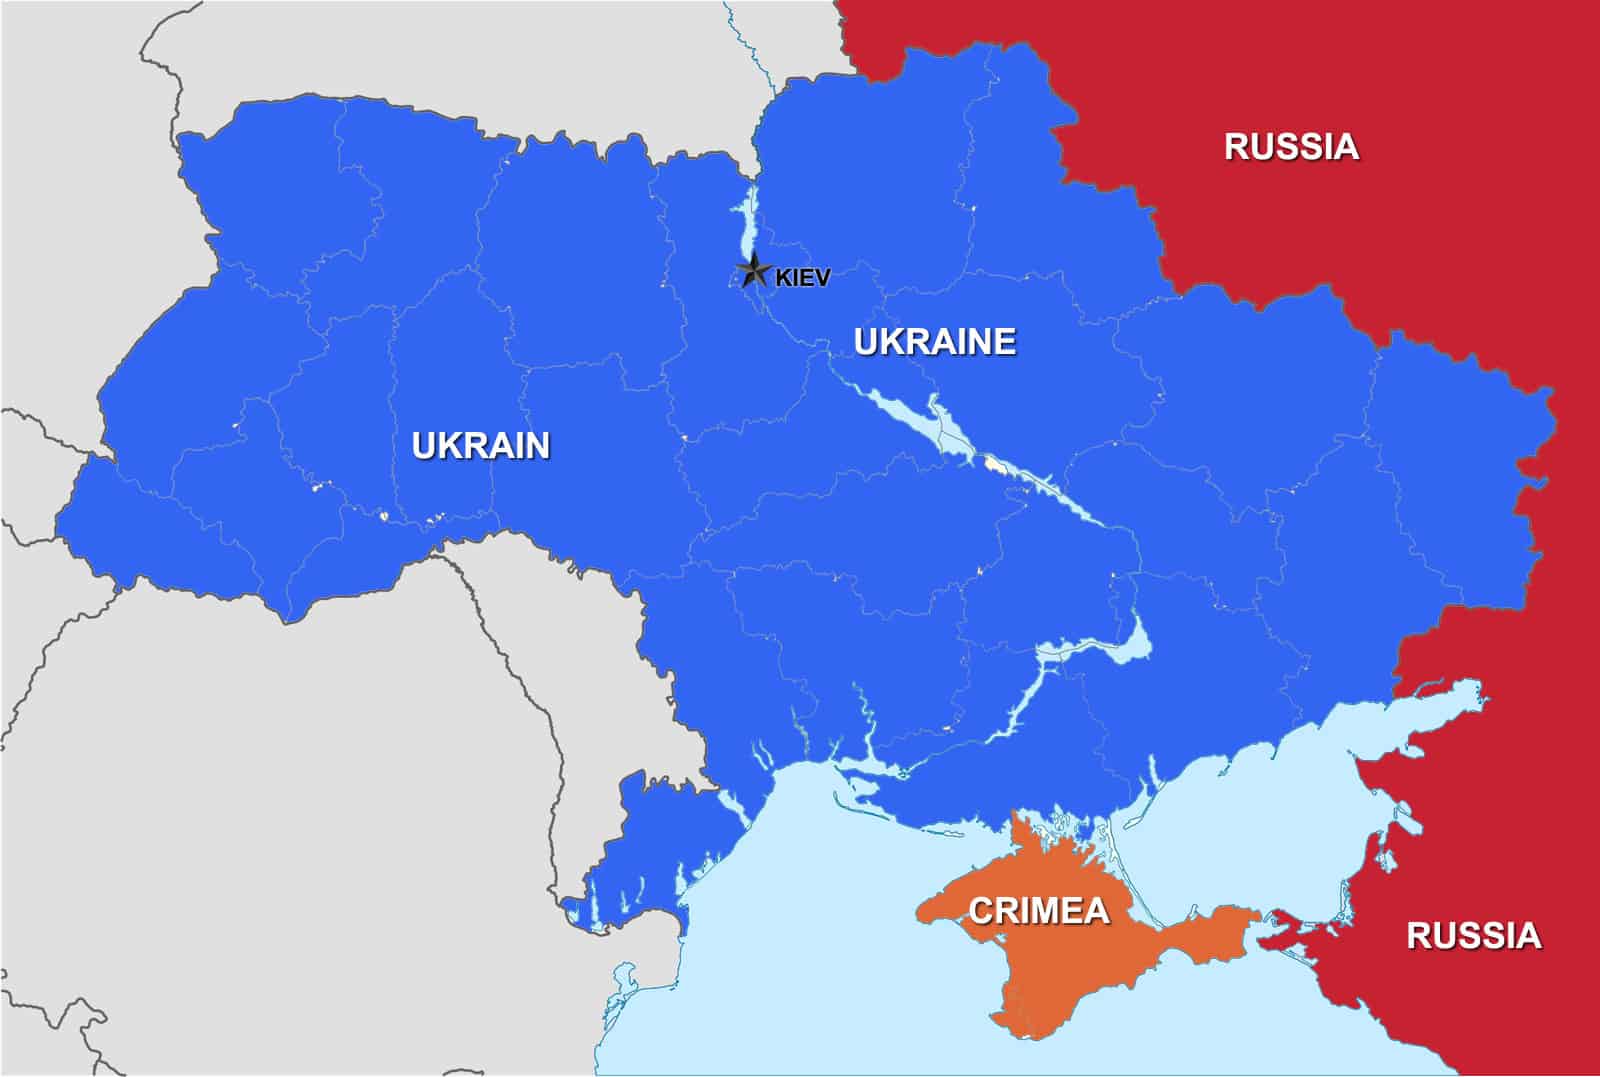 Distances between Ukraine, Crimea and Russia